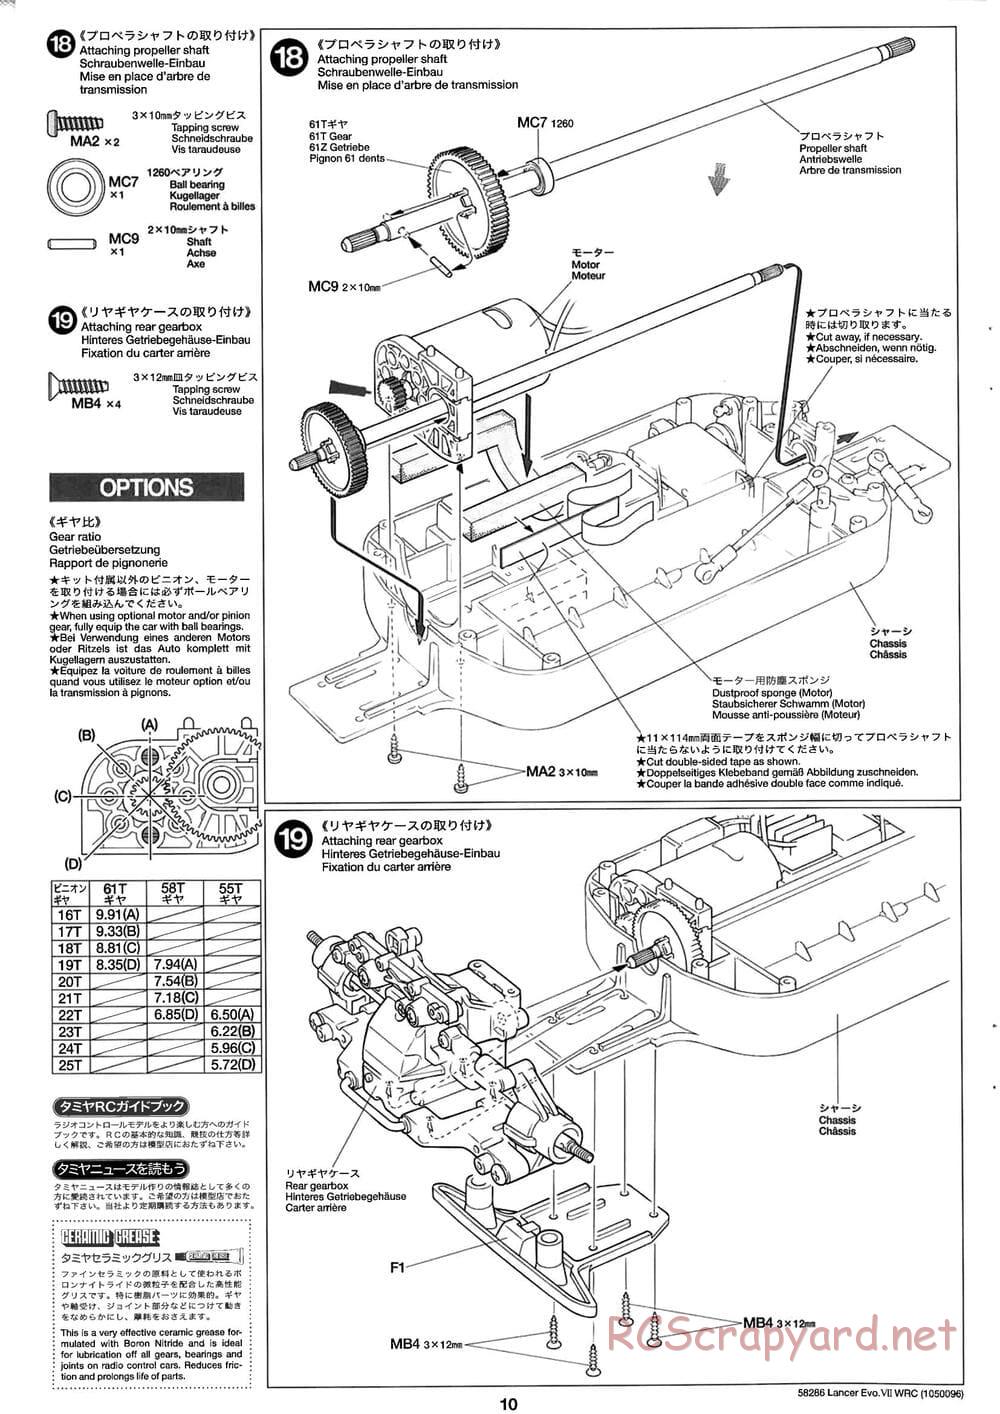 Tamiya - Mitsubishi Lancer Evolution VII WRC - TB-01 Chassis - Manual - Page 10